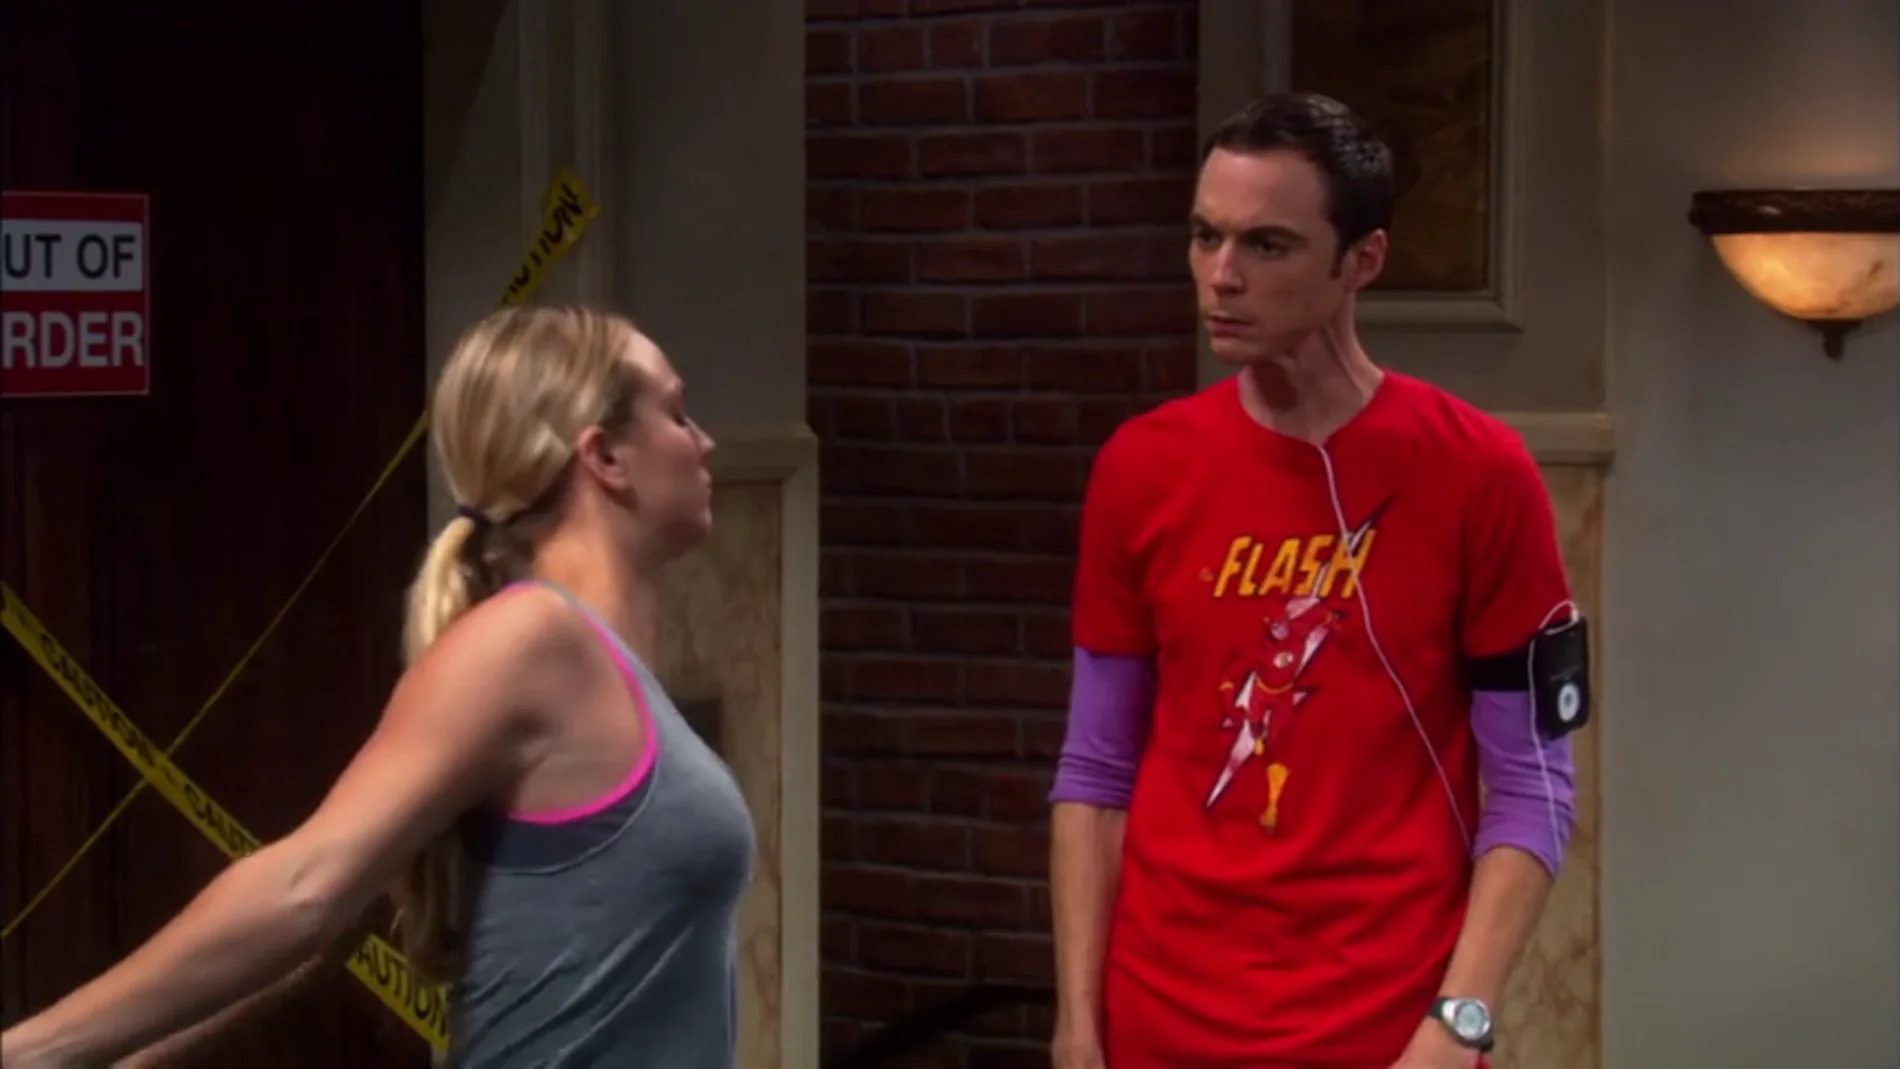 disco Unir tira Las camisetas de Sheldon, una buena manera de conocer su estado de ánimo